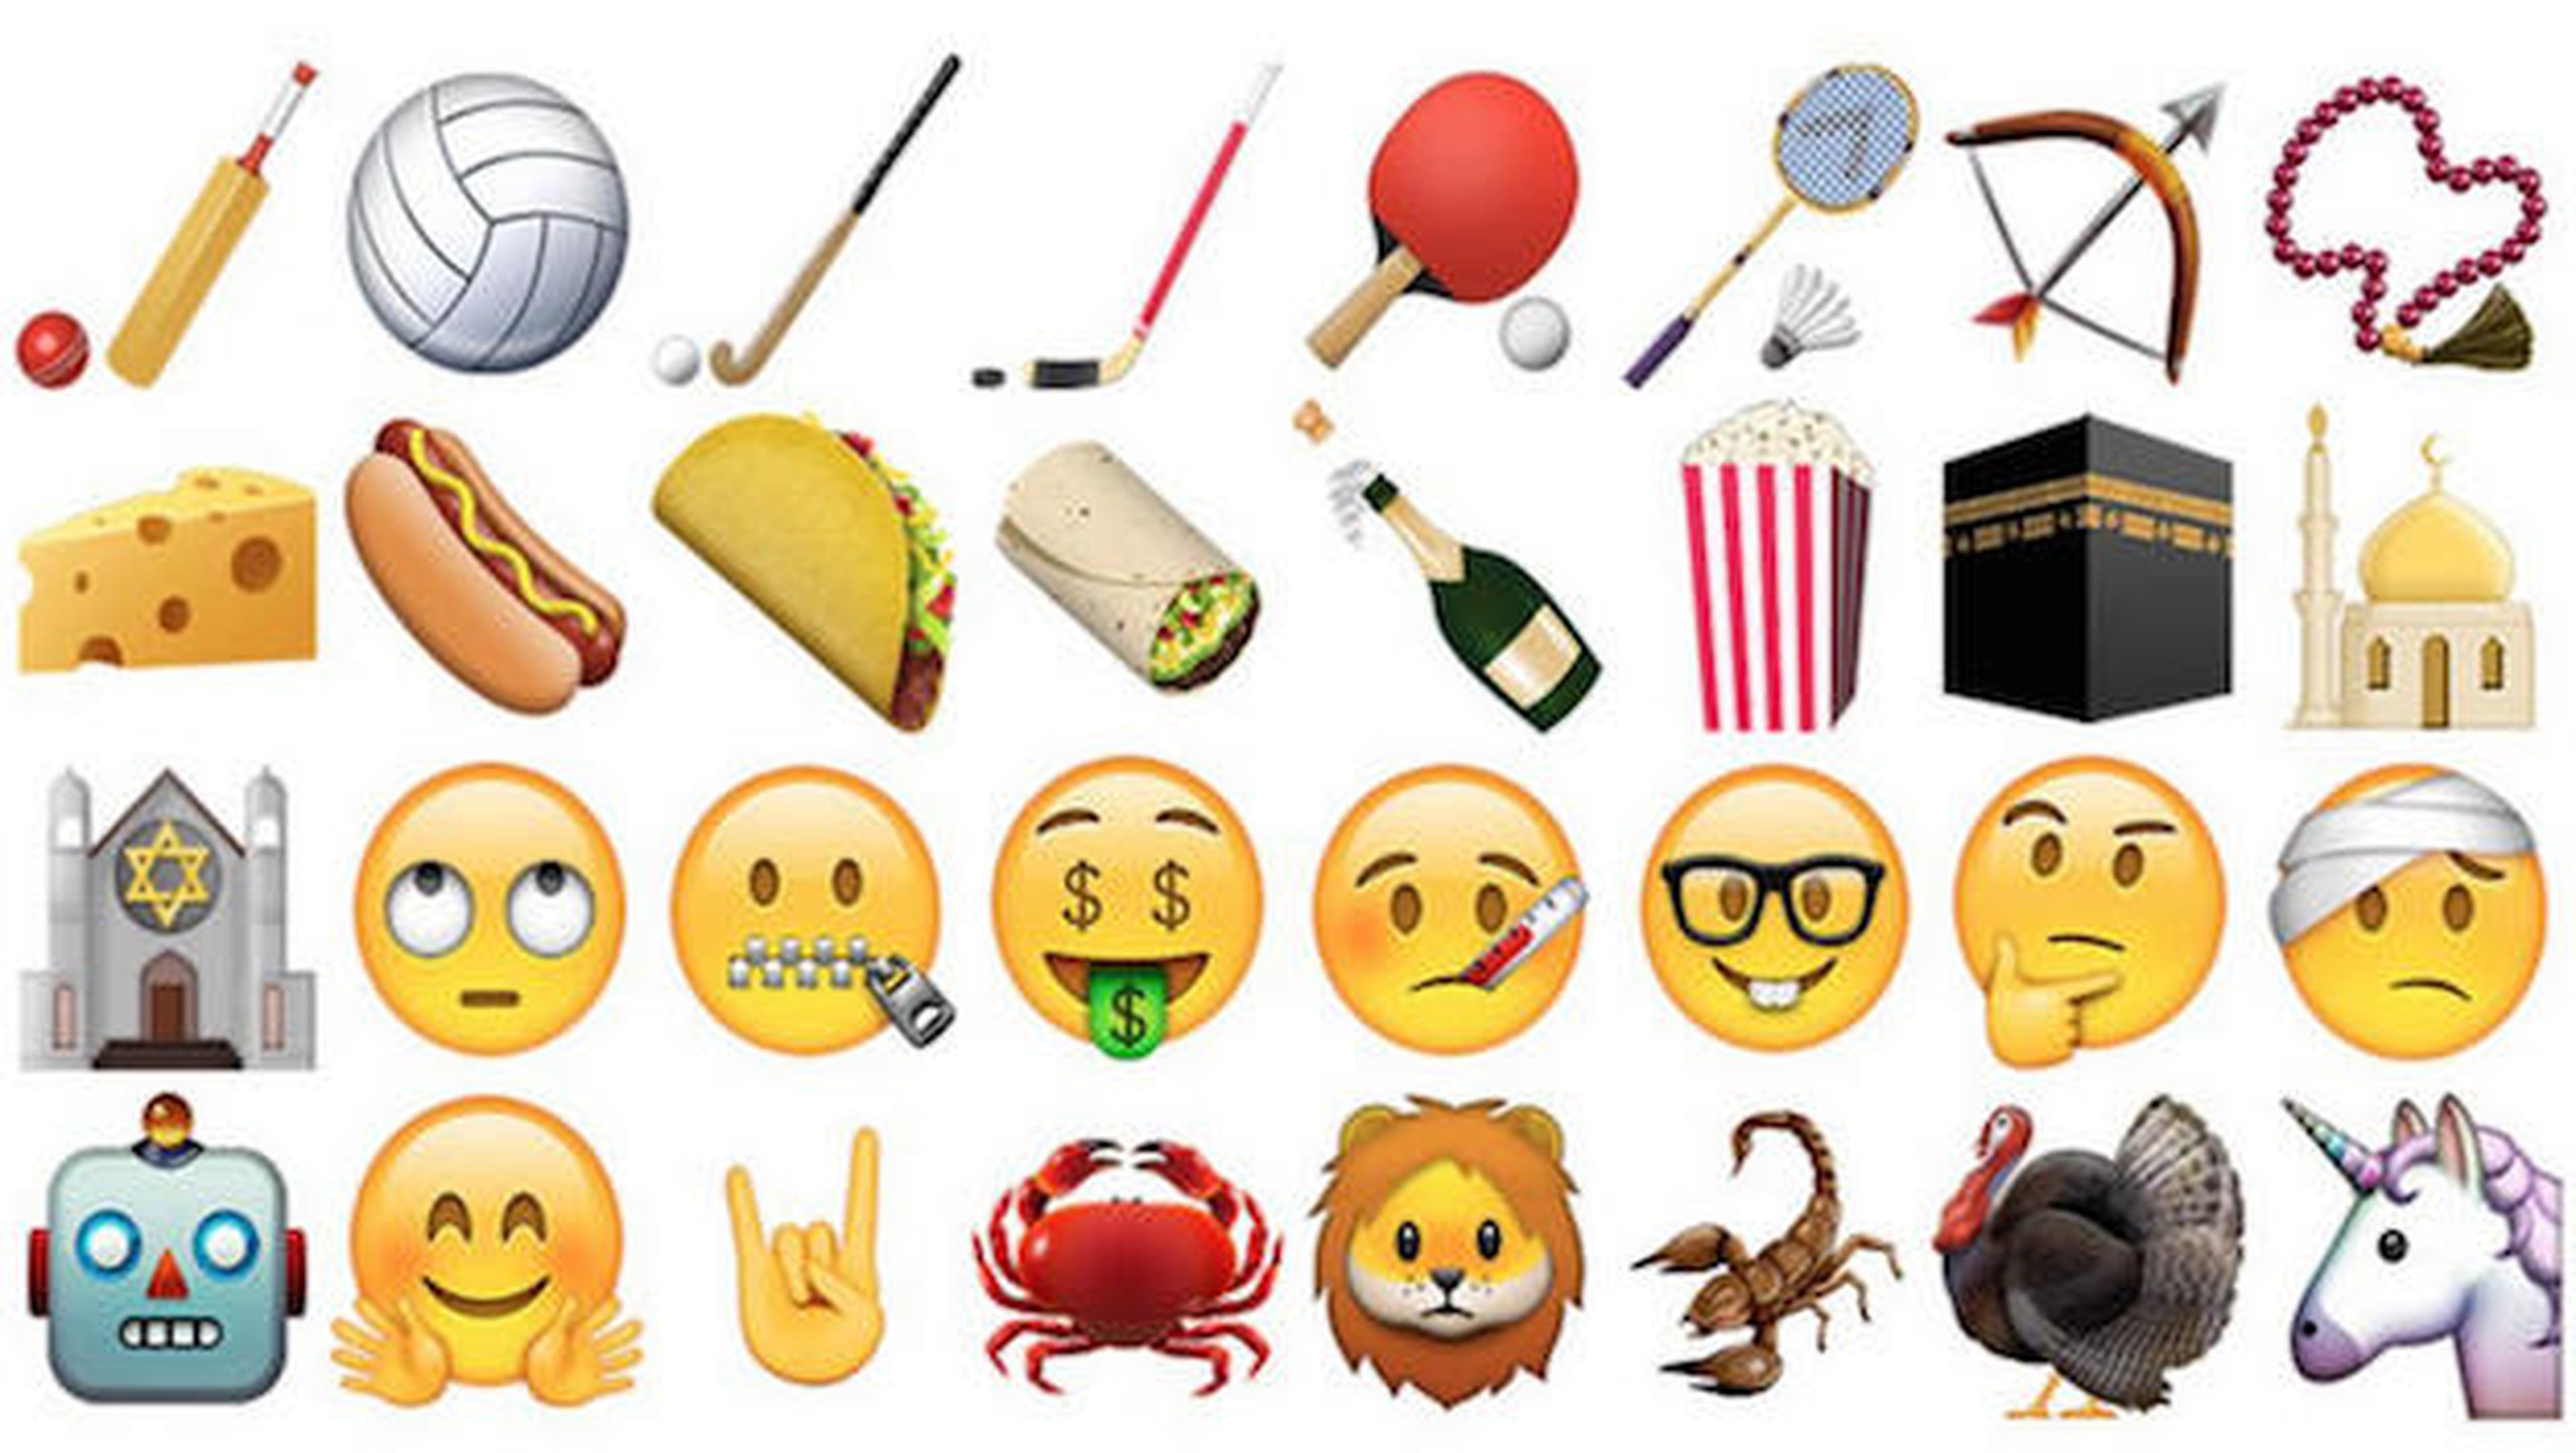 nuevo iOS introduce más emojis